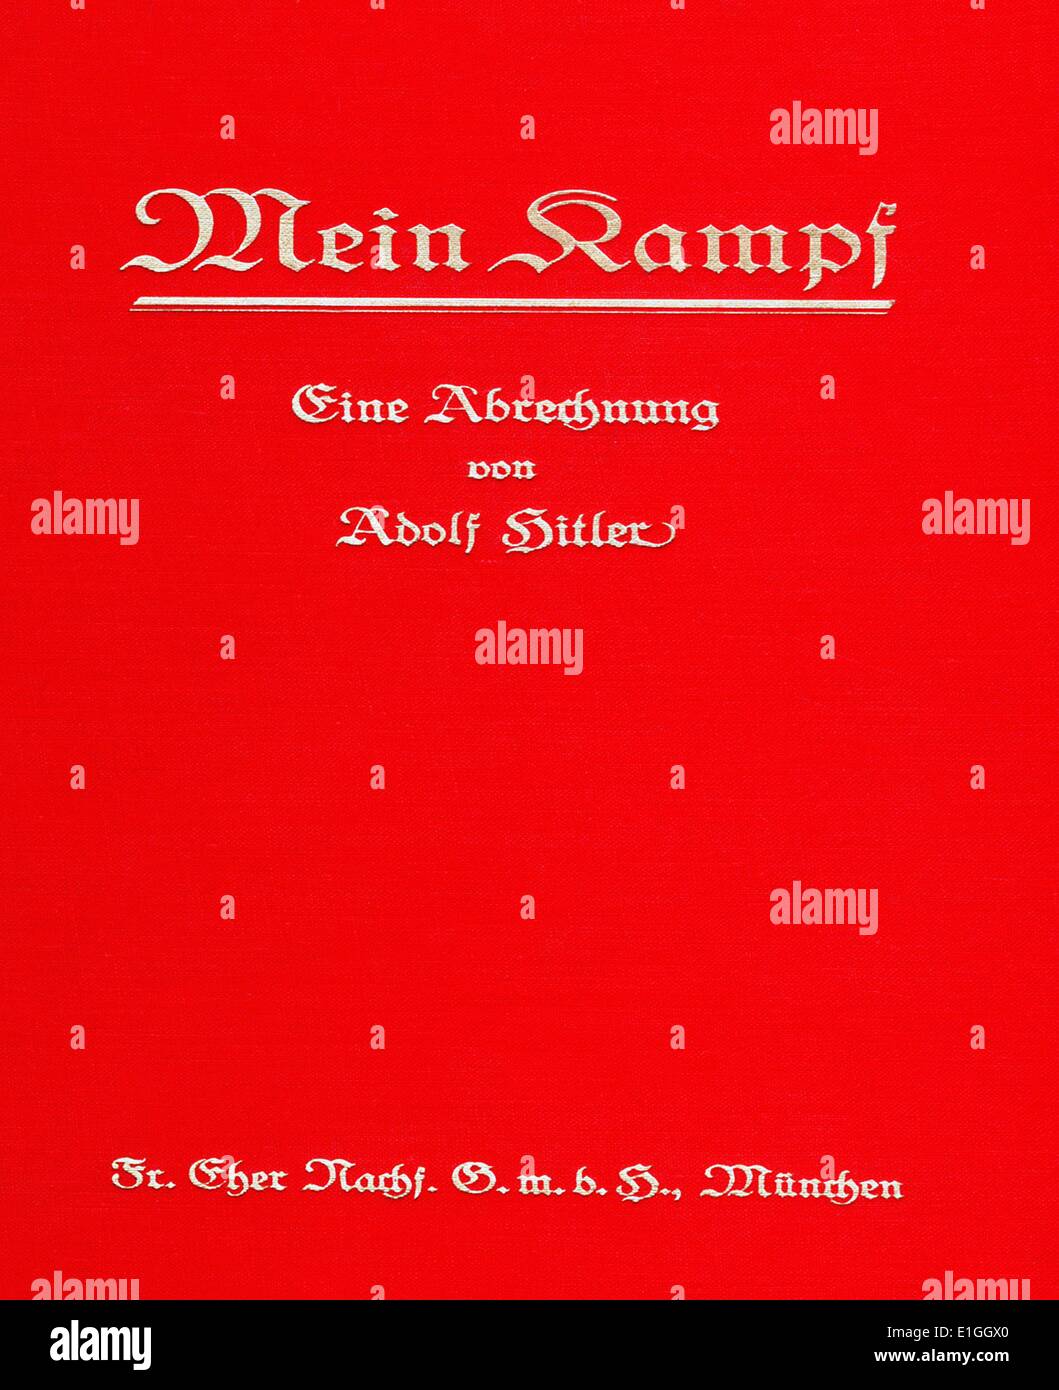 Mein Kampf, 'Mon combat' manifeste autobiographique par leader nazi Adolf Hitler, Volume 1 de Mein Kampf a été publié en 1925 et Volume 2 en 1926 Banque D'Images